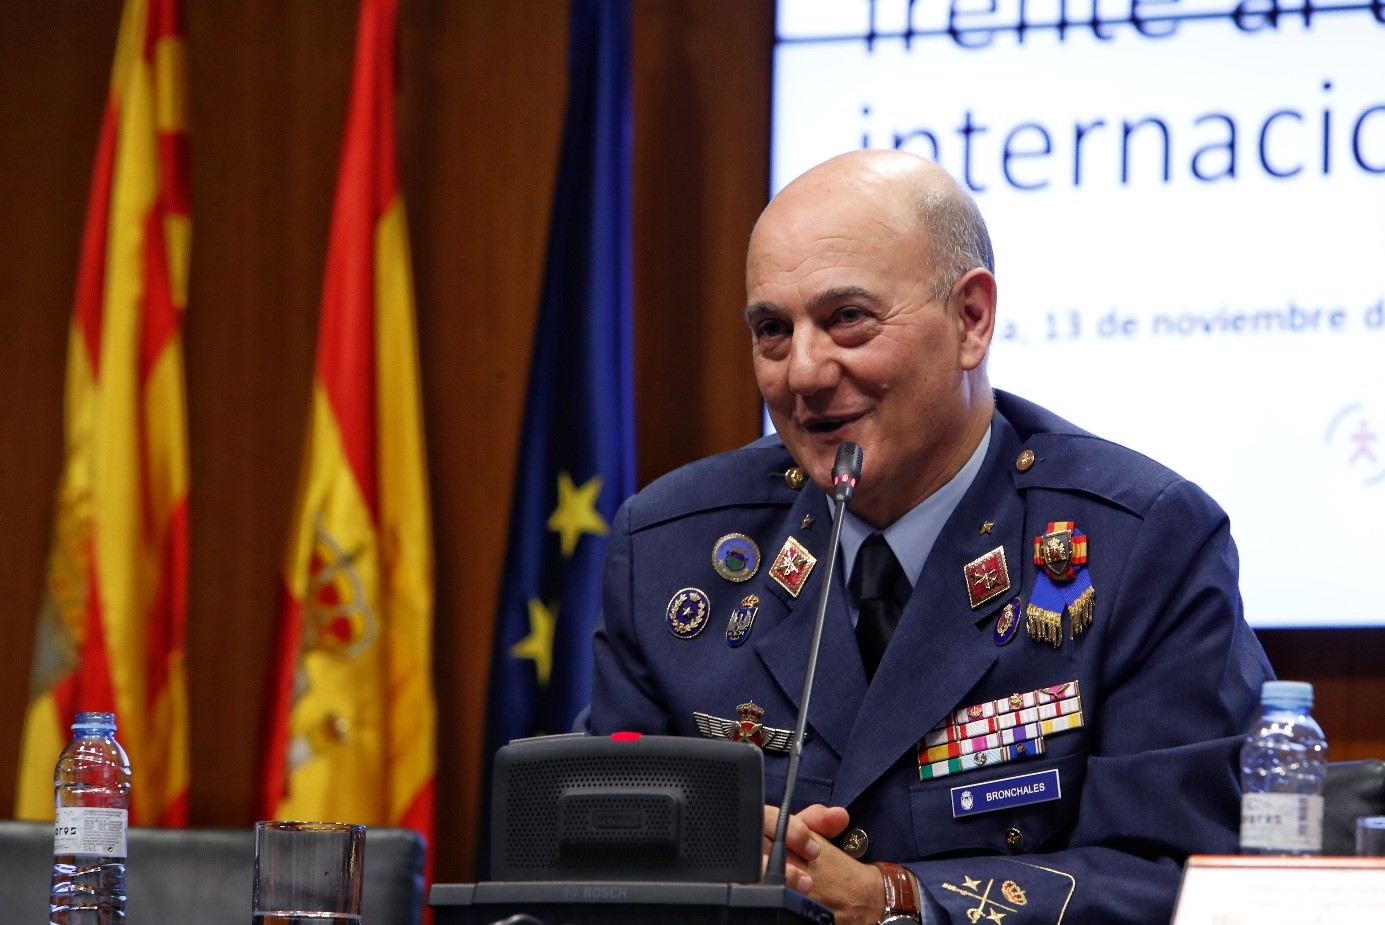 El general Muñoz Bronchales imparte la conferencia inaugural del seminario “Las Fuerzas Armadas frente al terrorismo internacional”